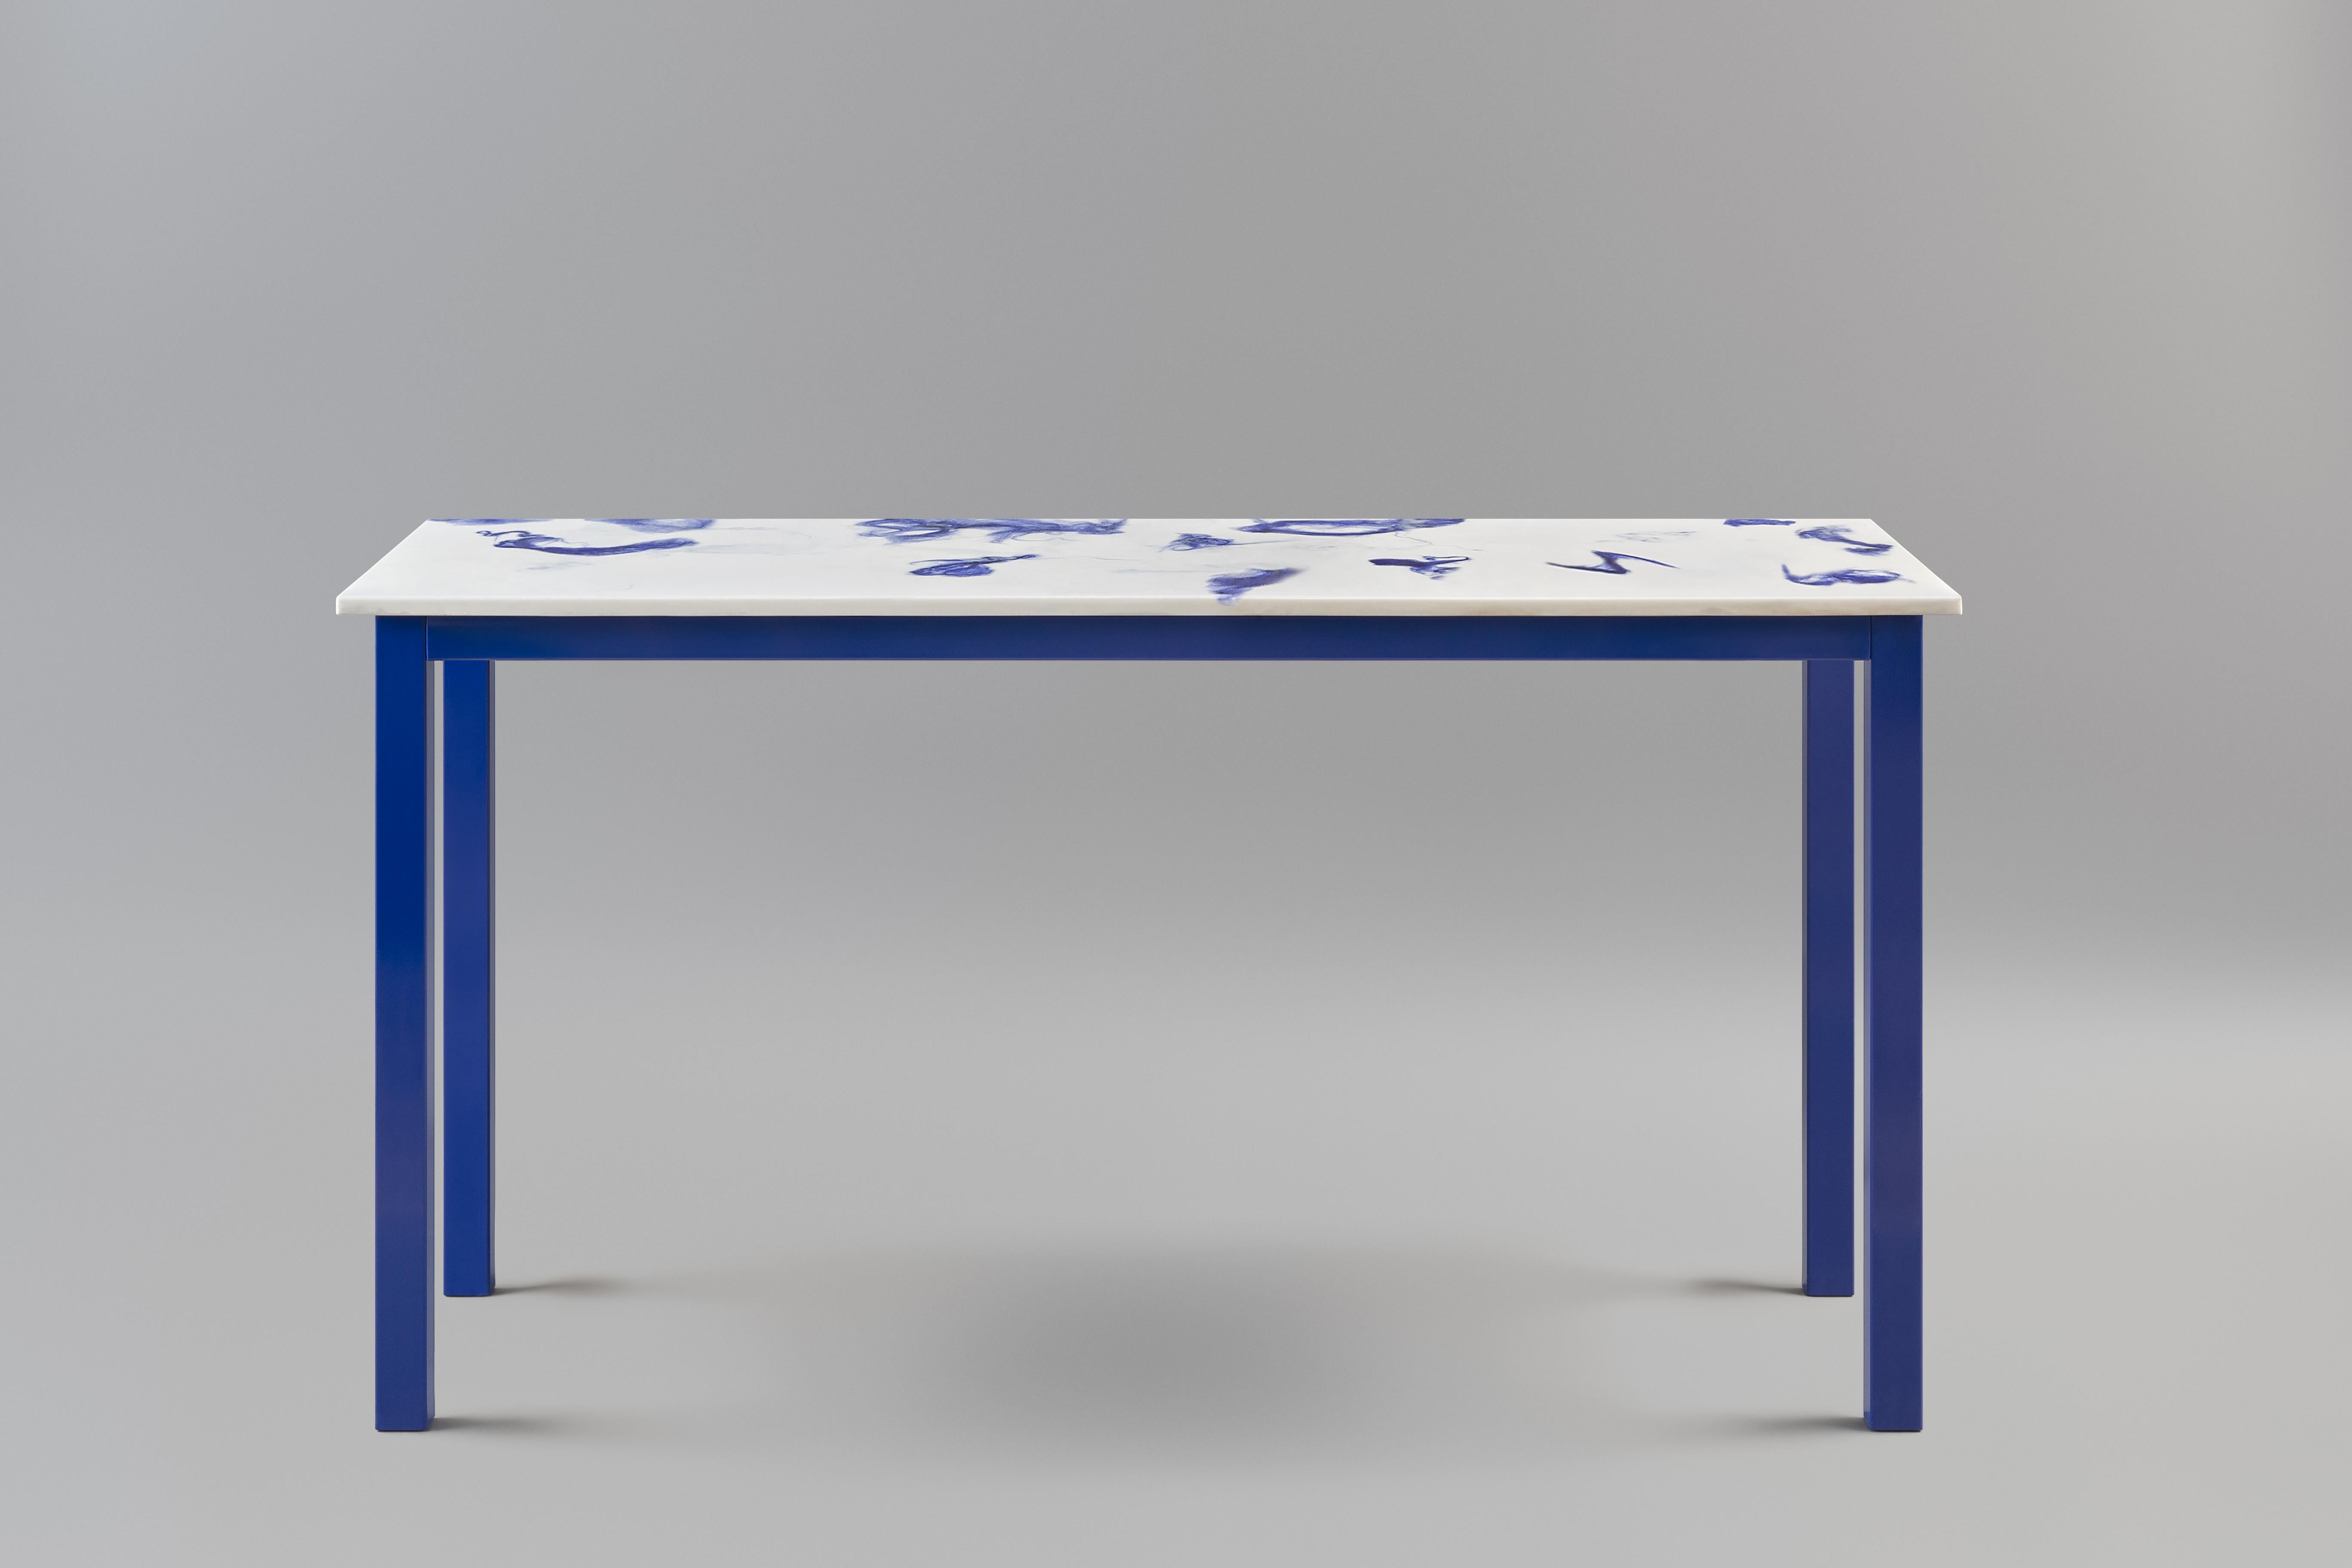 La console Fluent.
Le plateau de la table est réalisé en matériau Marwoolus avec des fibres de laine bleue et une base en poudre de marbre blanc de Carrare.
La structure du cadre en acier est recouverte d'une peinture en poudre